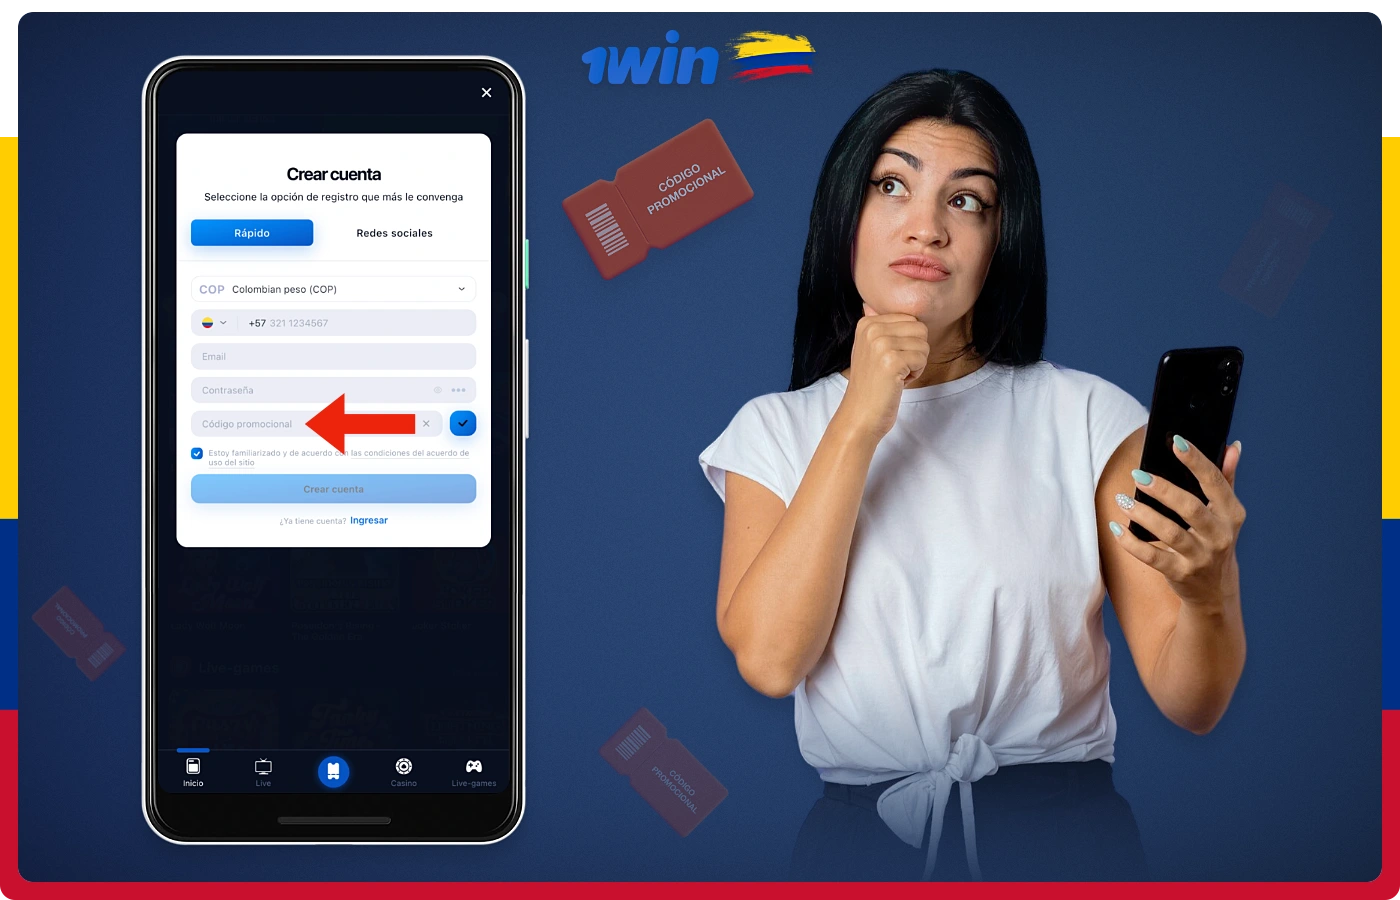 Los usuarios de móviles 1win de Colombia pueden utilizar el código promocional en la aplicación para móviles Android e iOS